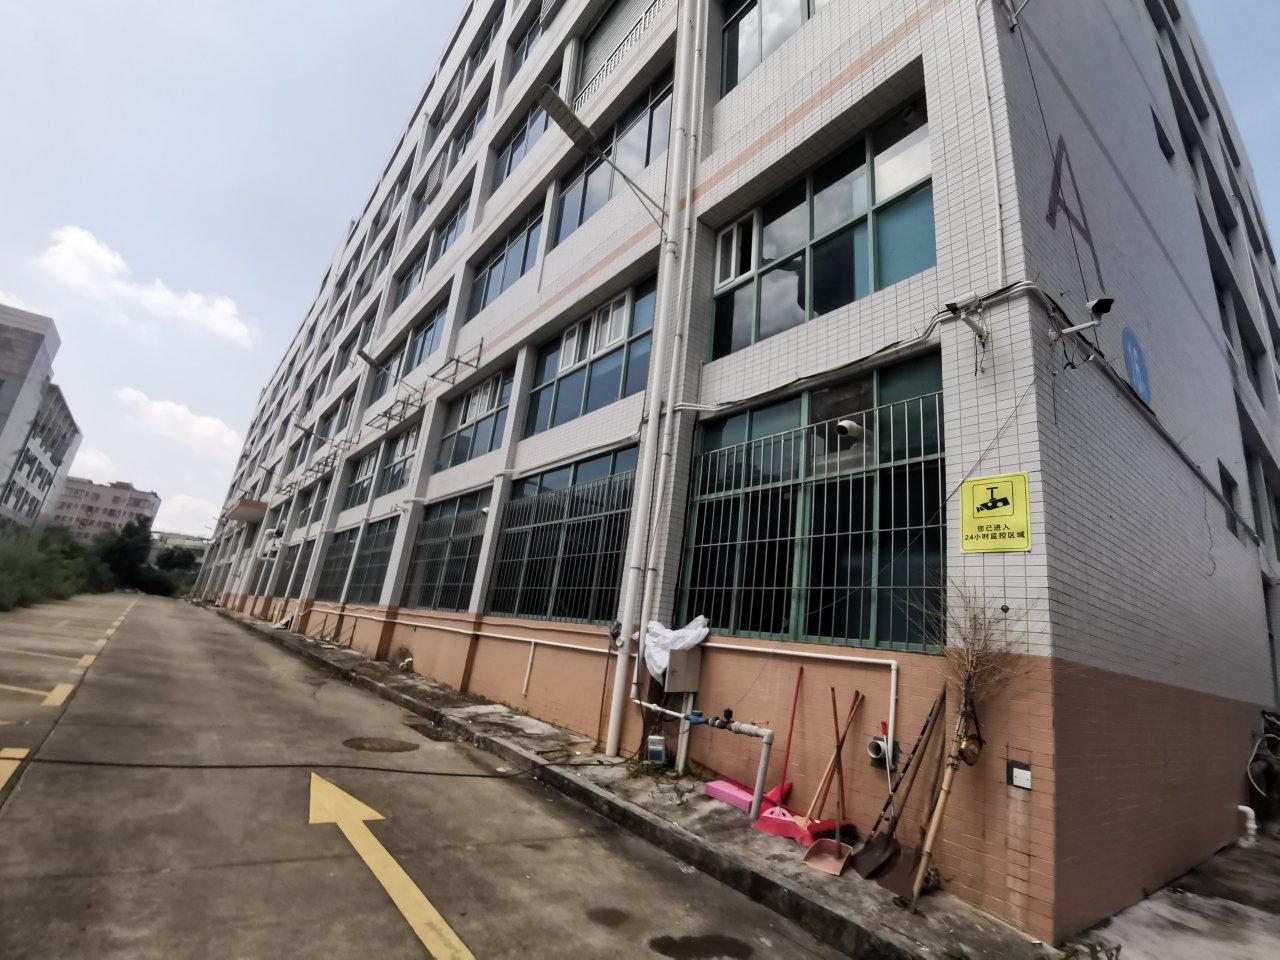 出租平湖华南城大型工业园区三楼1500平米厂房仓库带装修出租